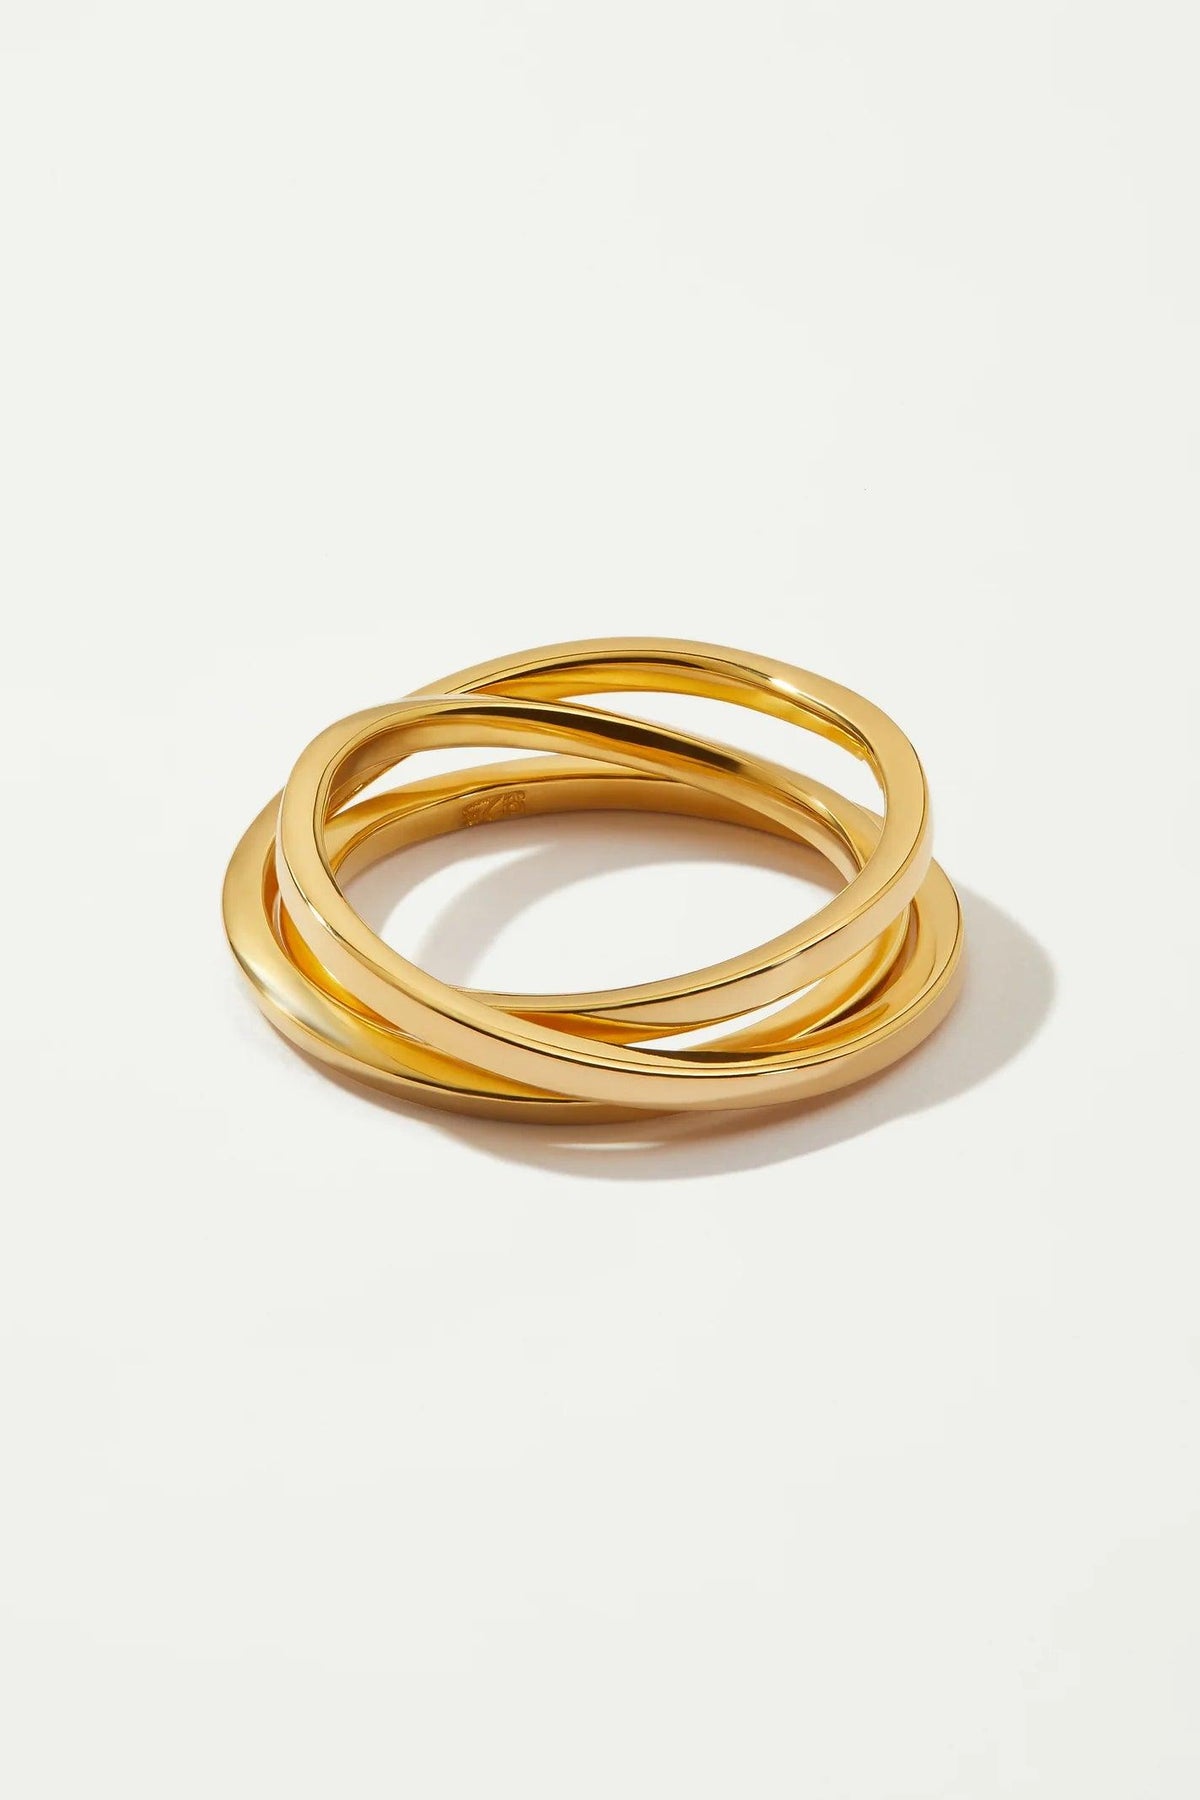 KIRA KIRA thin 18K Gold plated Ring - FLTRD UAE